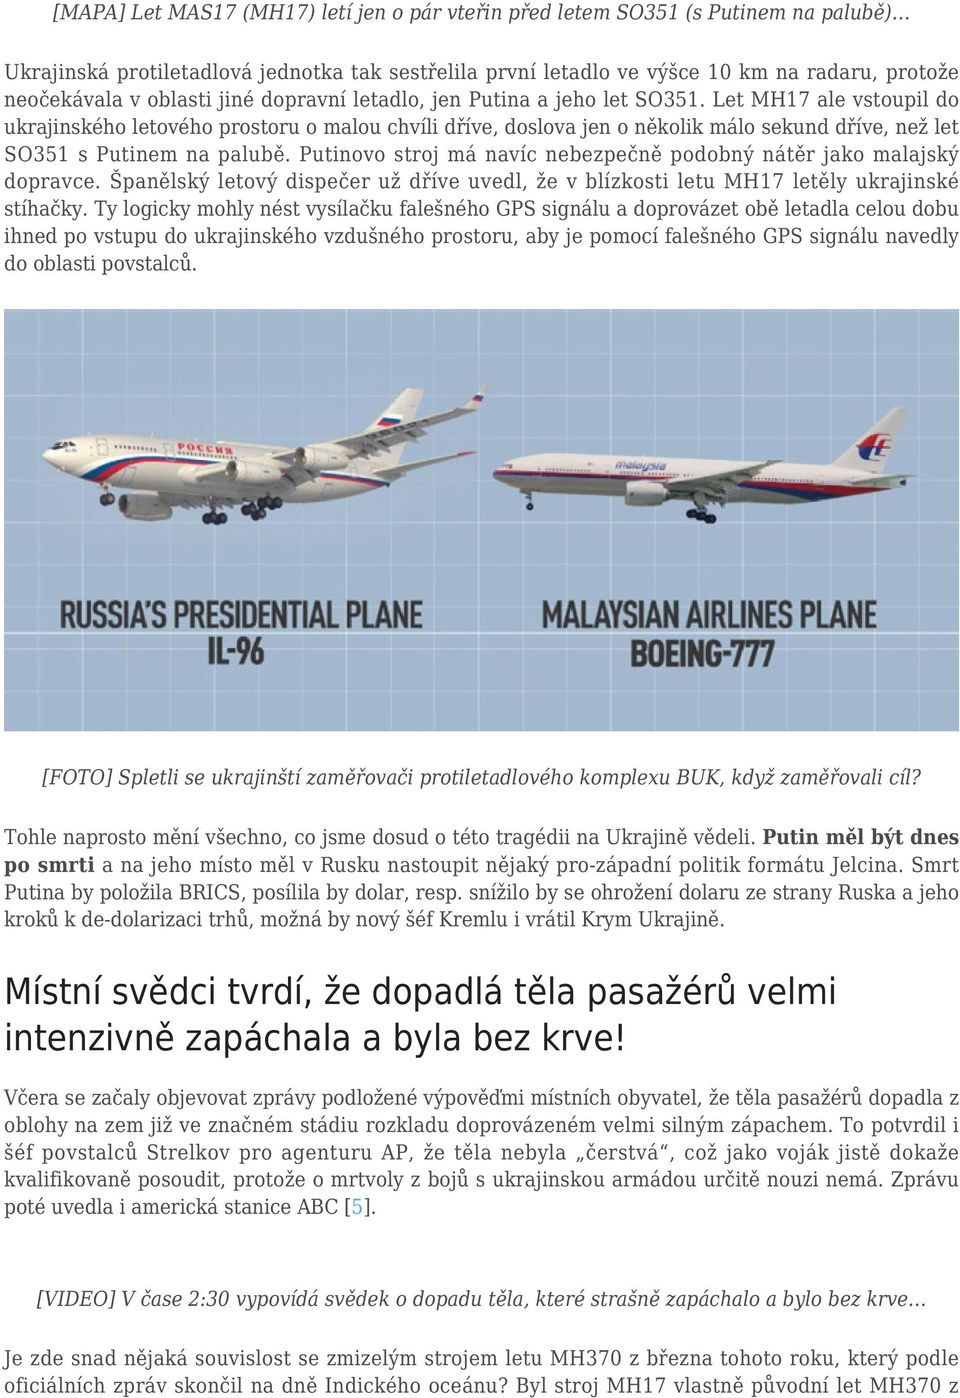 Let MH17 ale vstoupil do ukrajinského letového prostoru o malou chvíli dříve, doslova jen o několik málo sekund dříve, než let SO351 s Putinem na palubě.